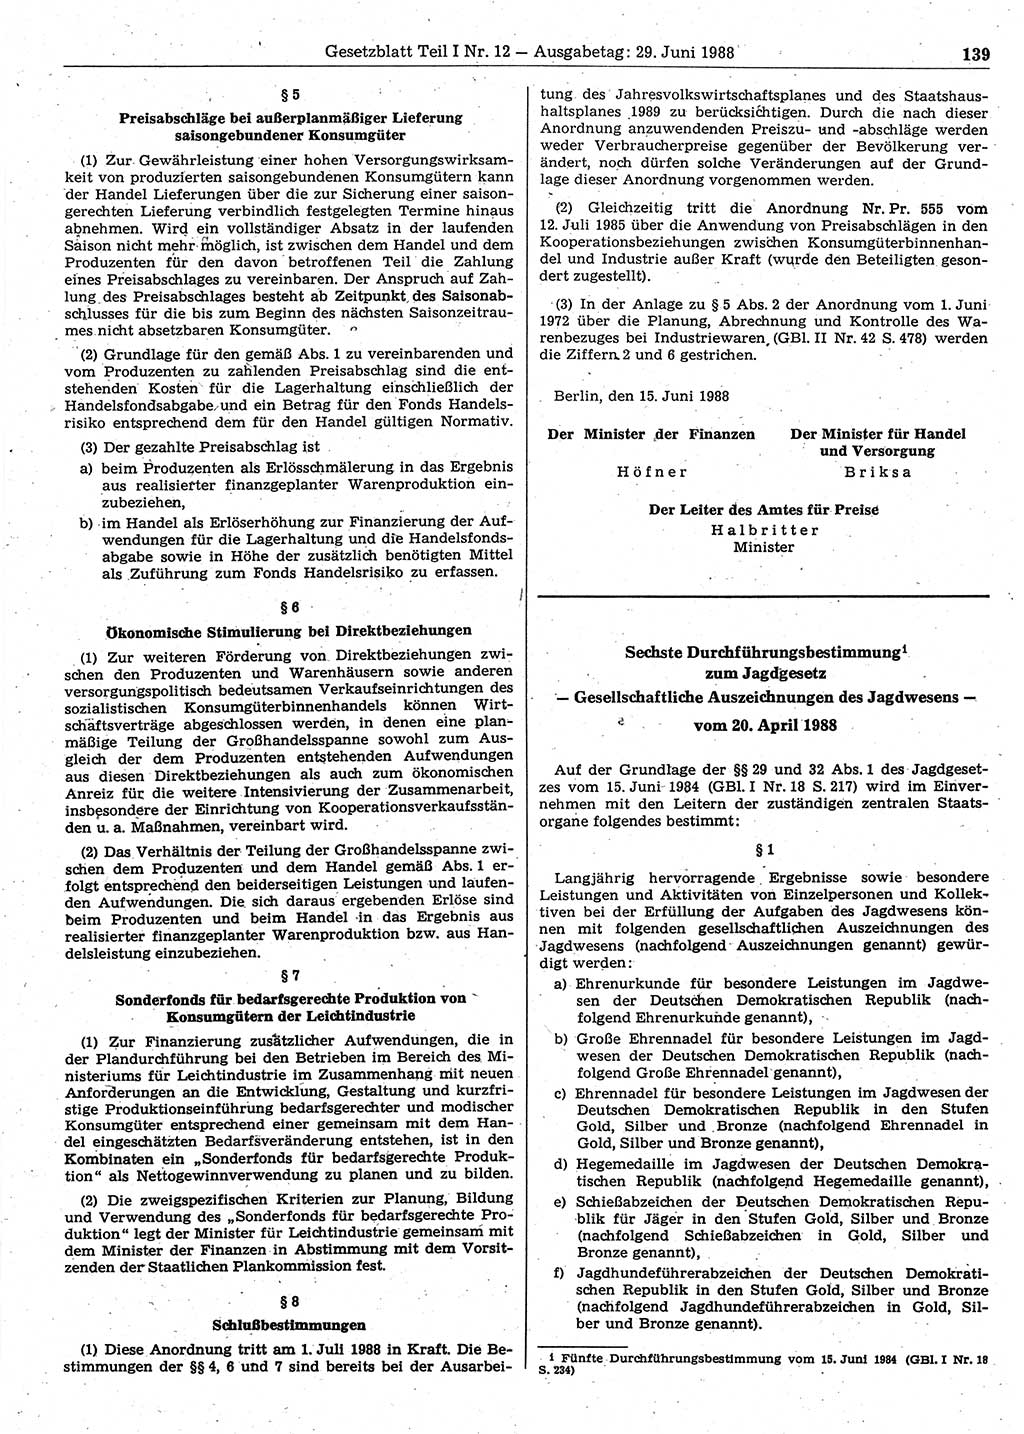 Gesetzblatt (GBl.) der Deutschen Demokratischen Republik (DDR) Teil Ⅰ 1988, Seite 139 (GBl. DDR Ⅰ 1988, S. 139)